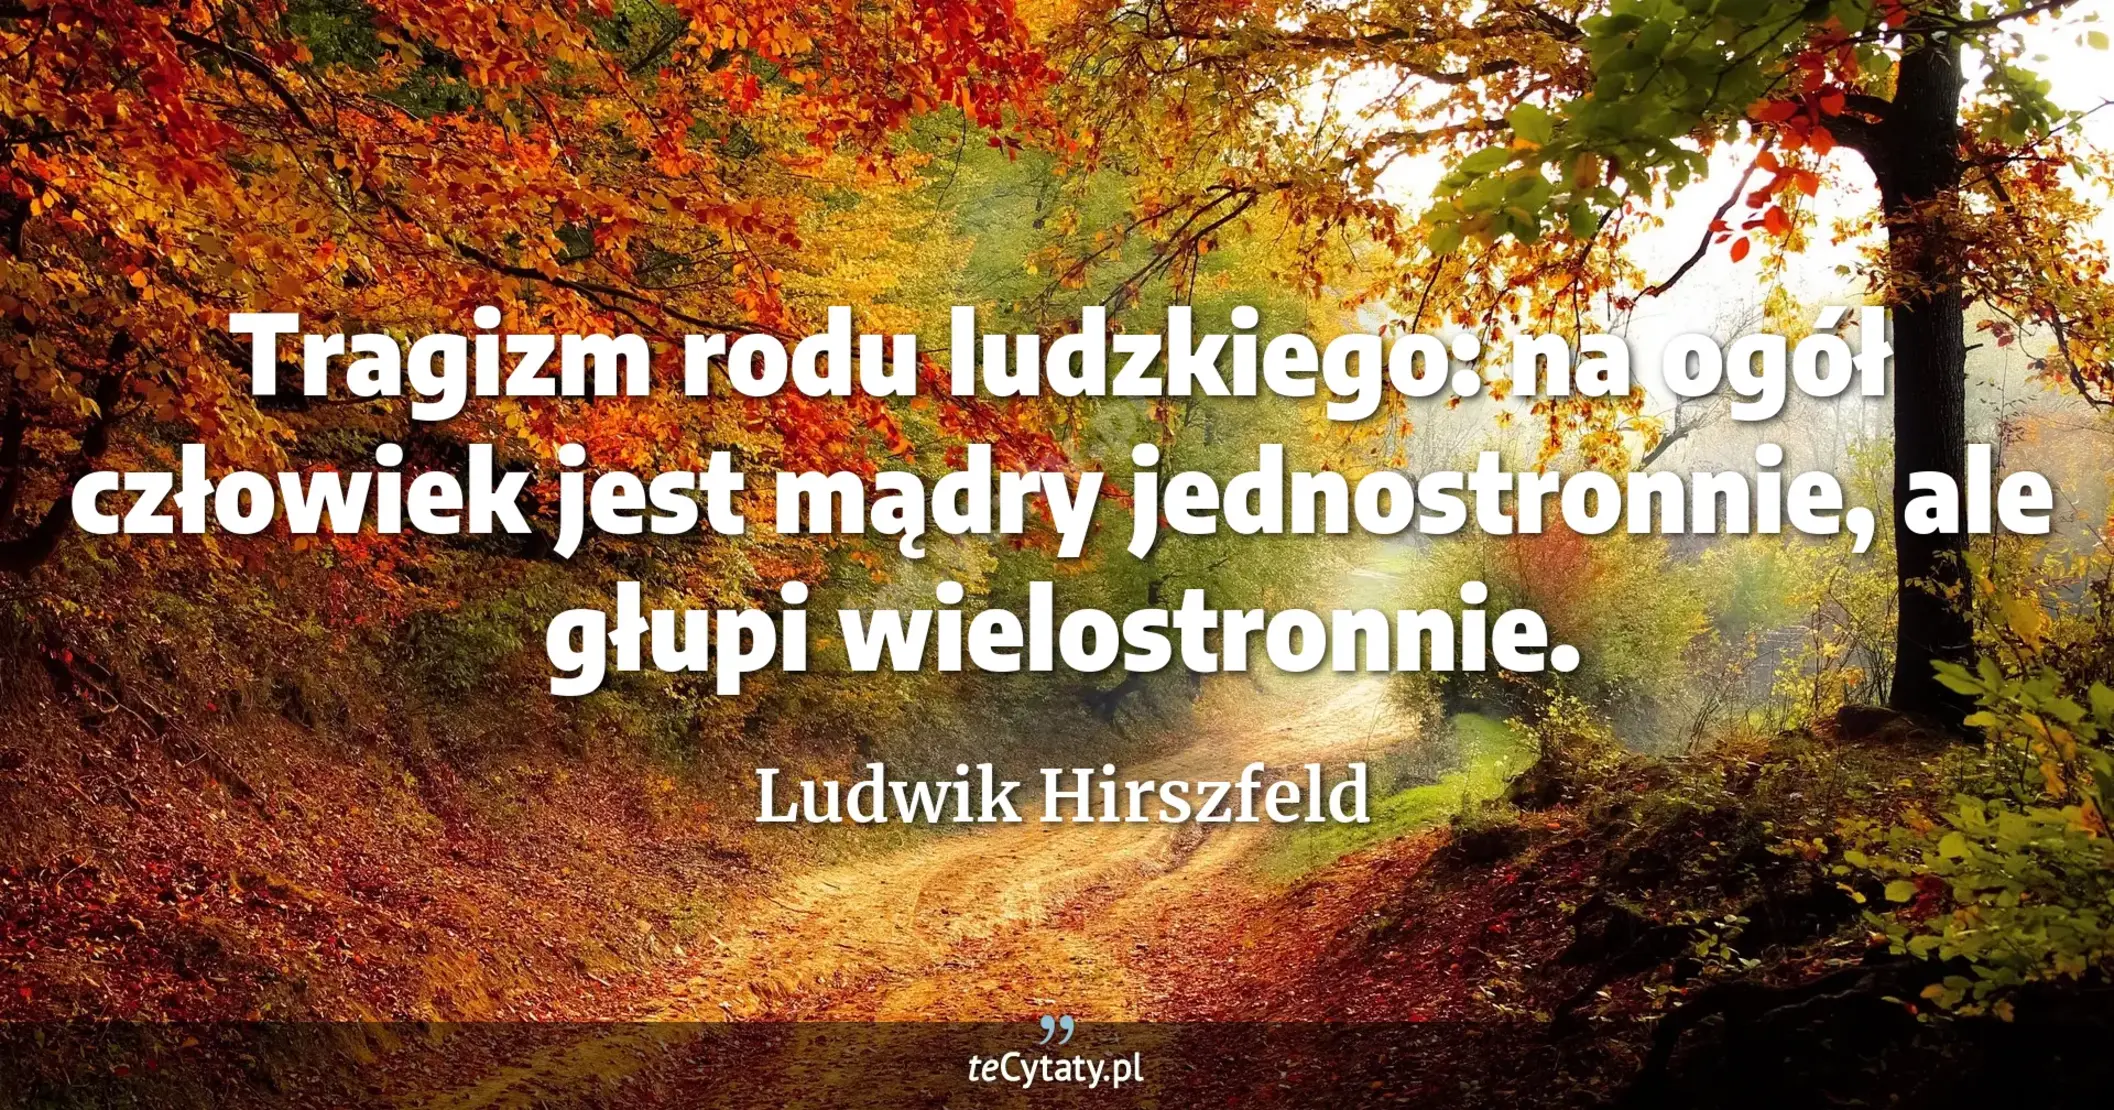 Tragizm rodu ludzkiego: na ogół człowiek jest mądry jednostronnie, ale głupi wielostronnie. - Ludwik Hirszfeld